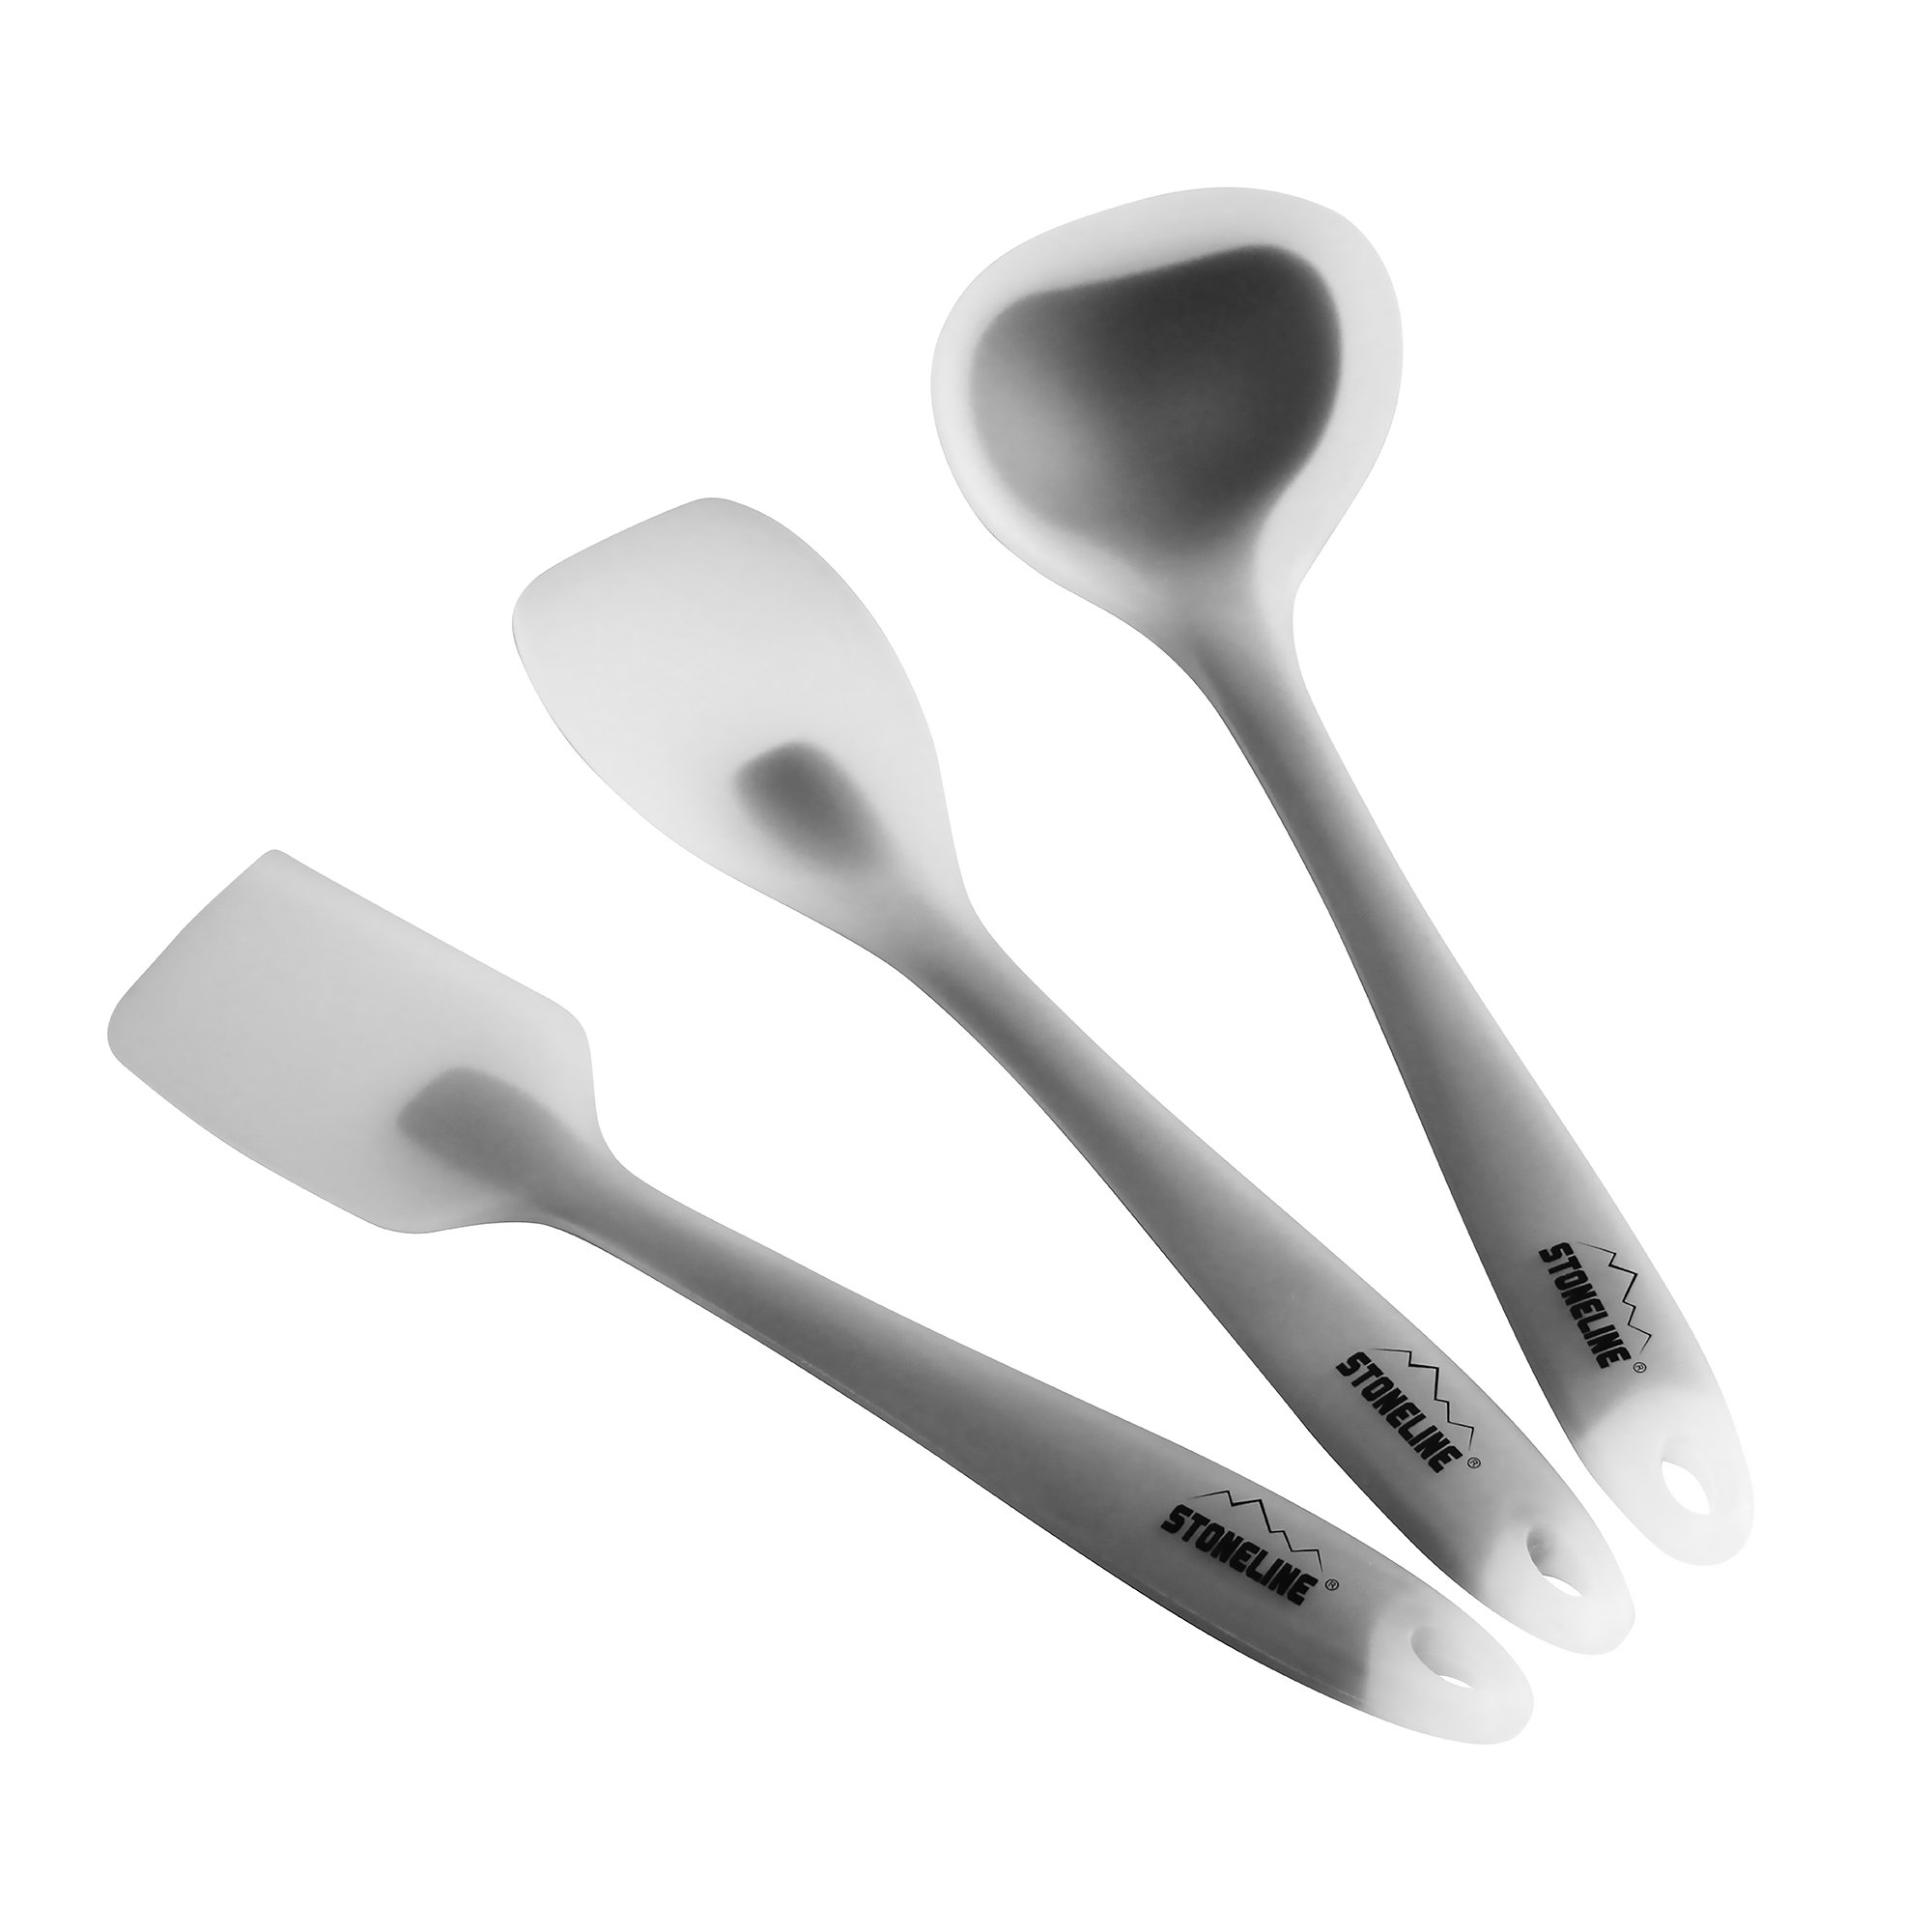 STONELINE® Set di utensili da cucina, 3 pezzi: 1 raschietto, 1 cucchiaio da cucina e 1 mestolo da zuppa